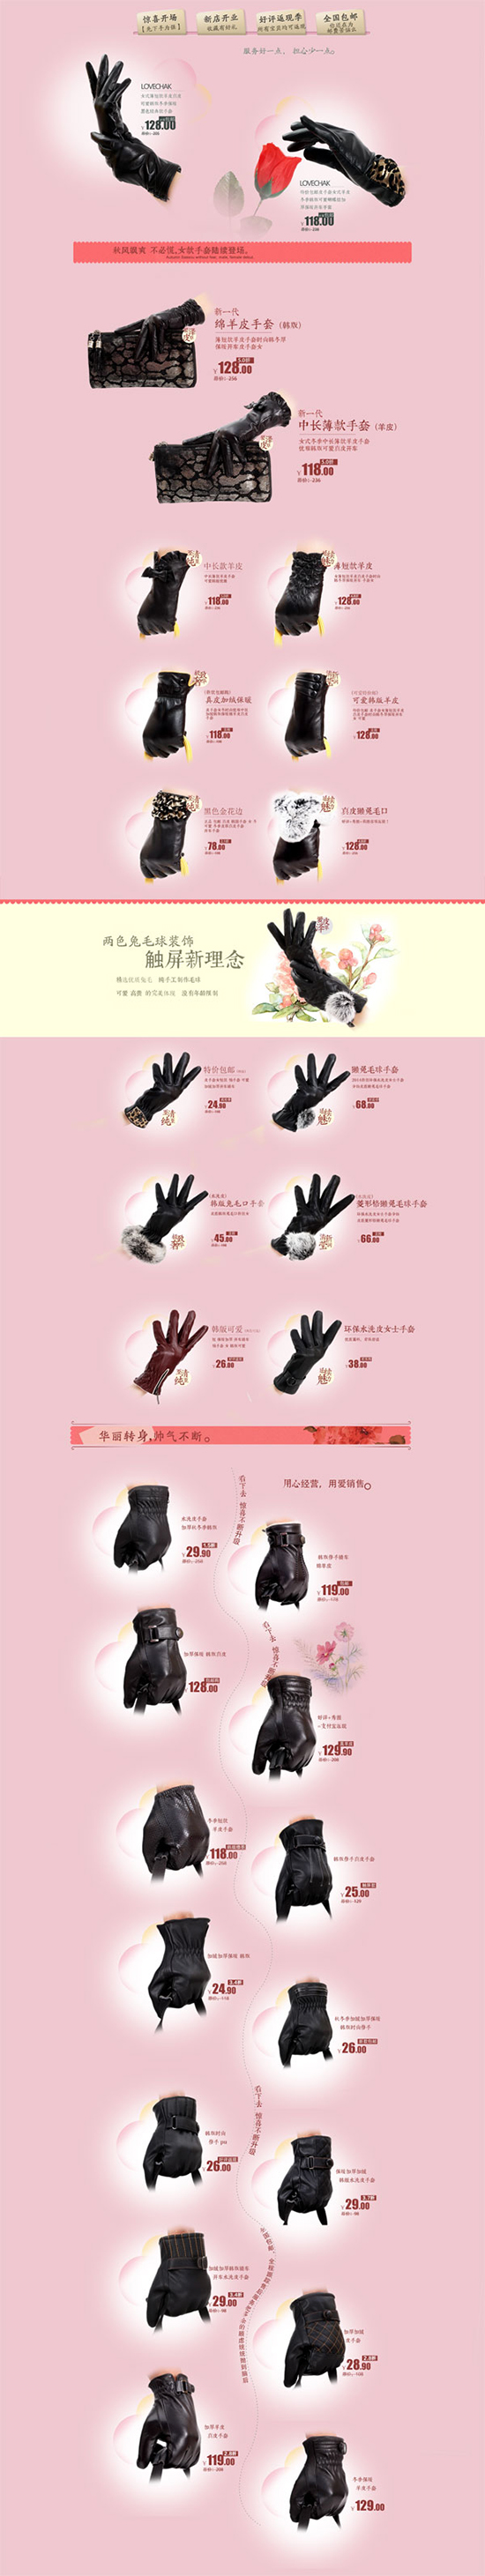 Handschuhe Shop Taobao Psd Vorlage